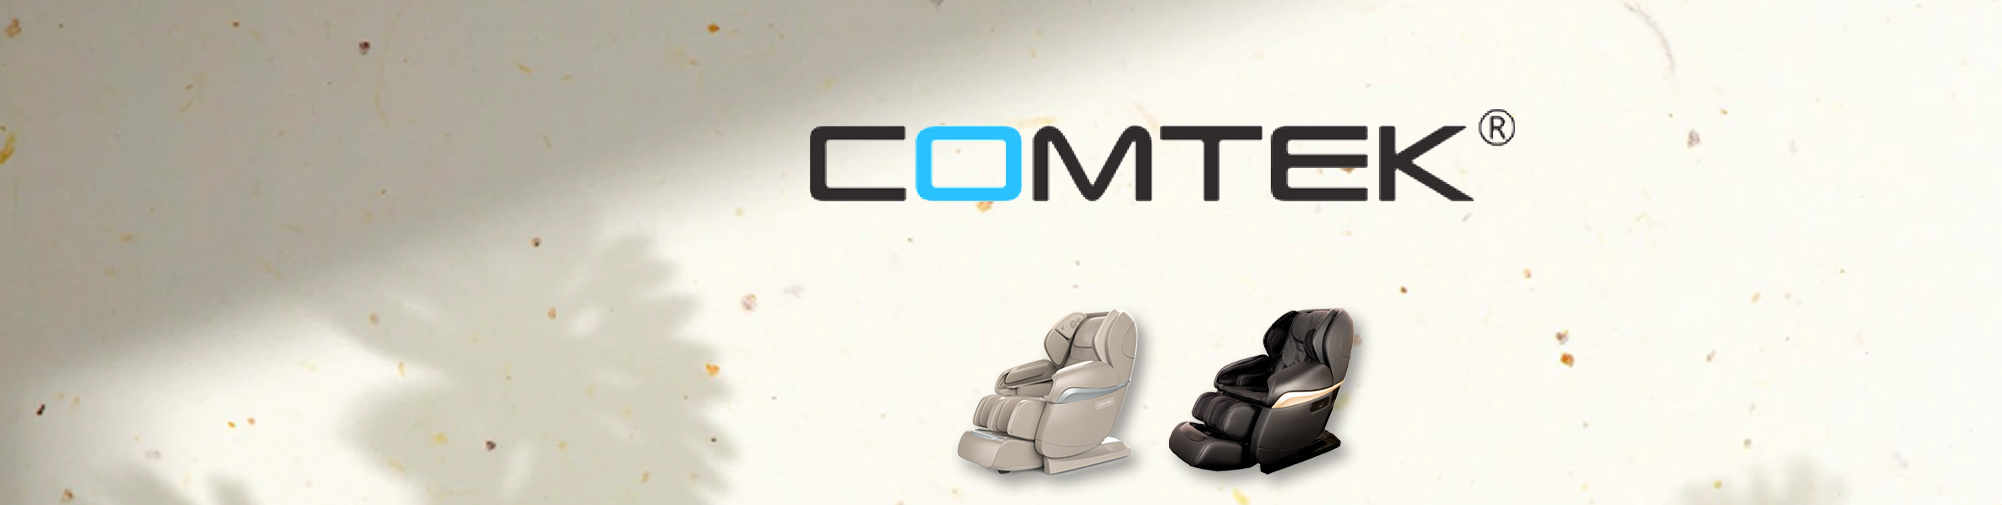 COMTEK - professional original producer | Massage Chair World